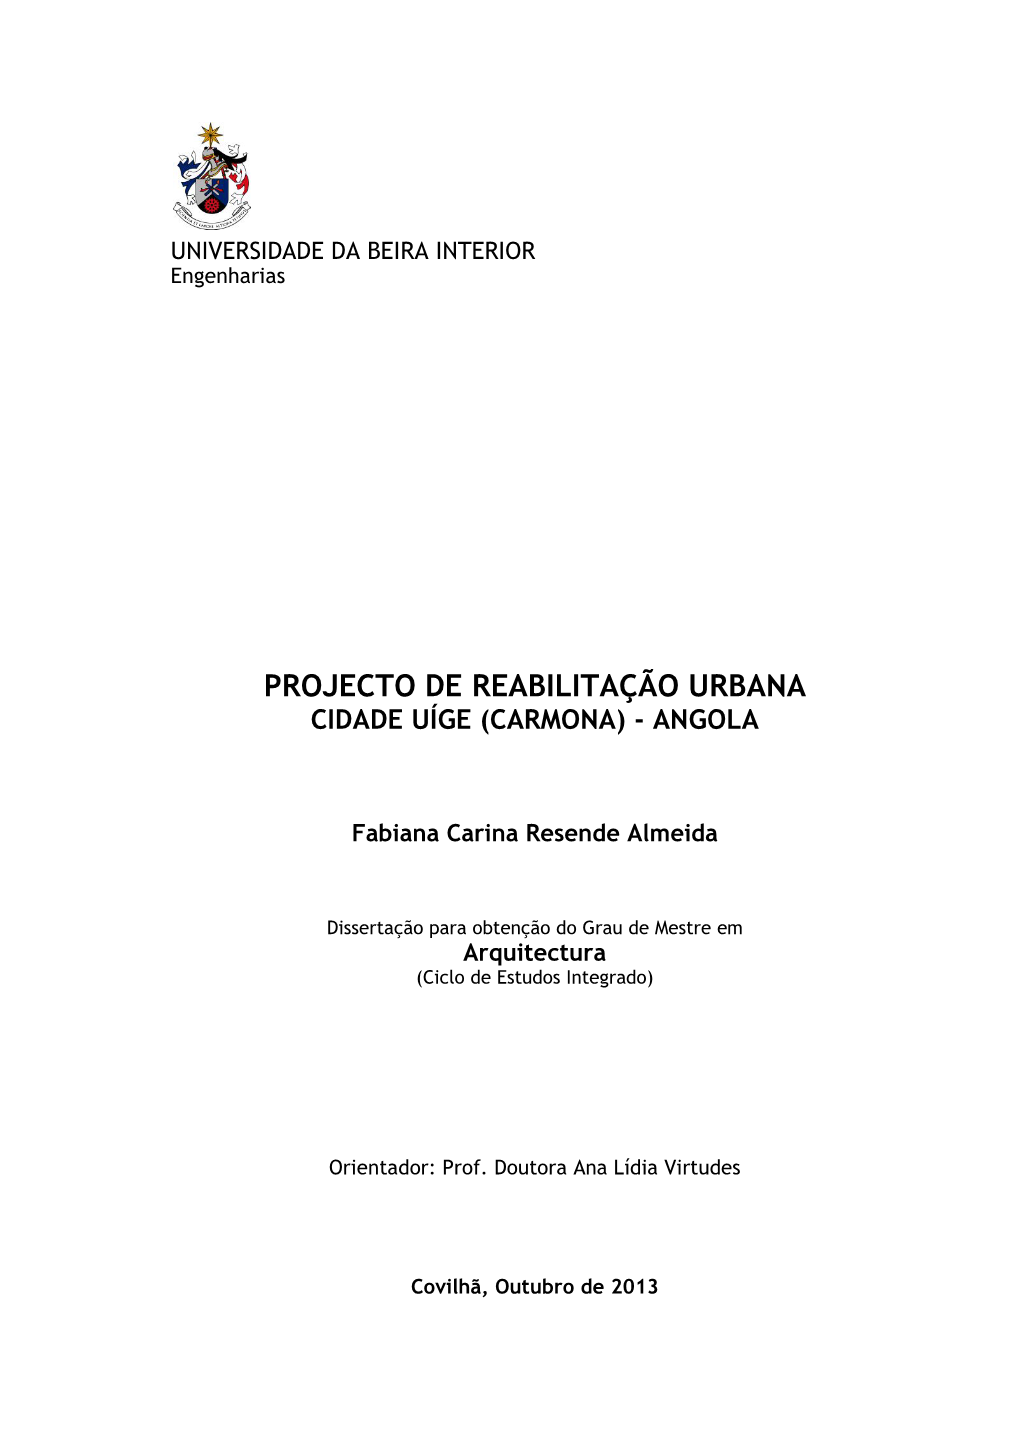 Projecto De Reabilitação Urbana Cidade Uíge (Carmona) - Angola